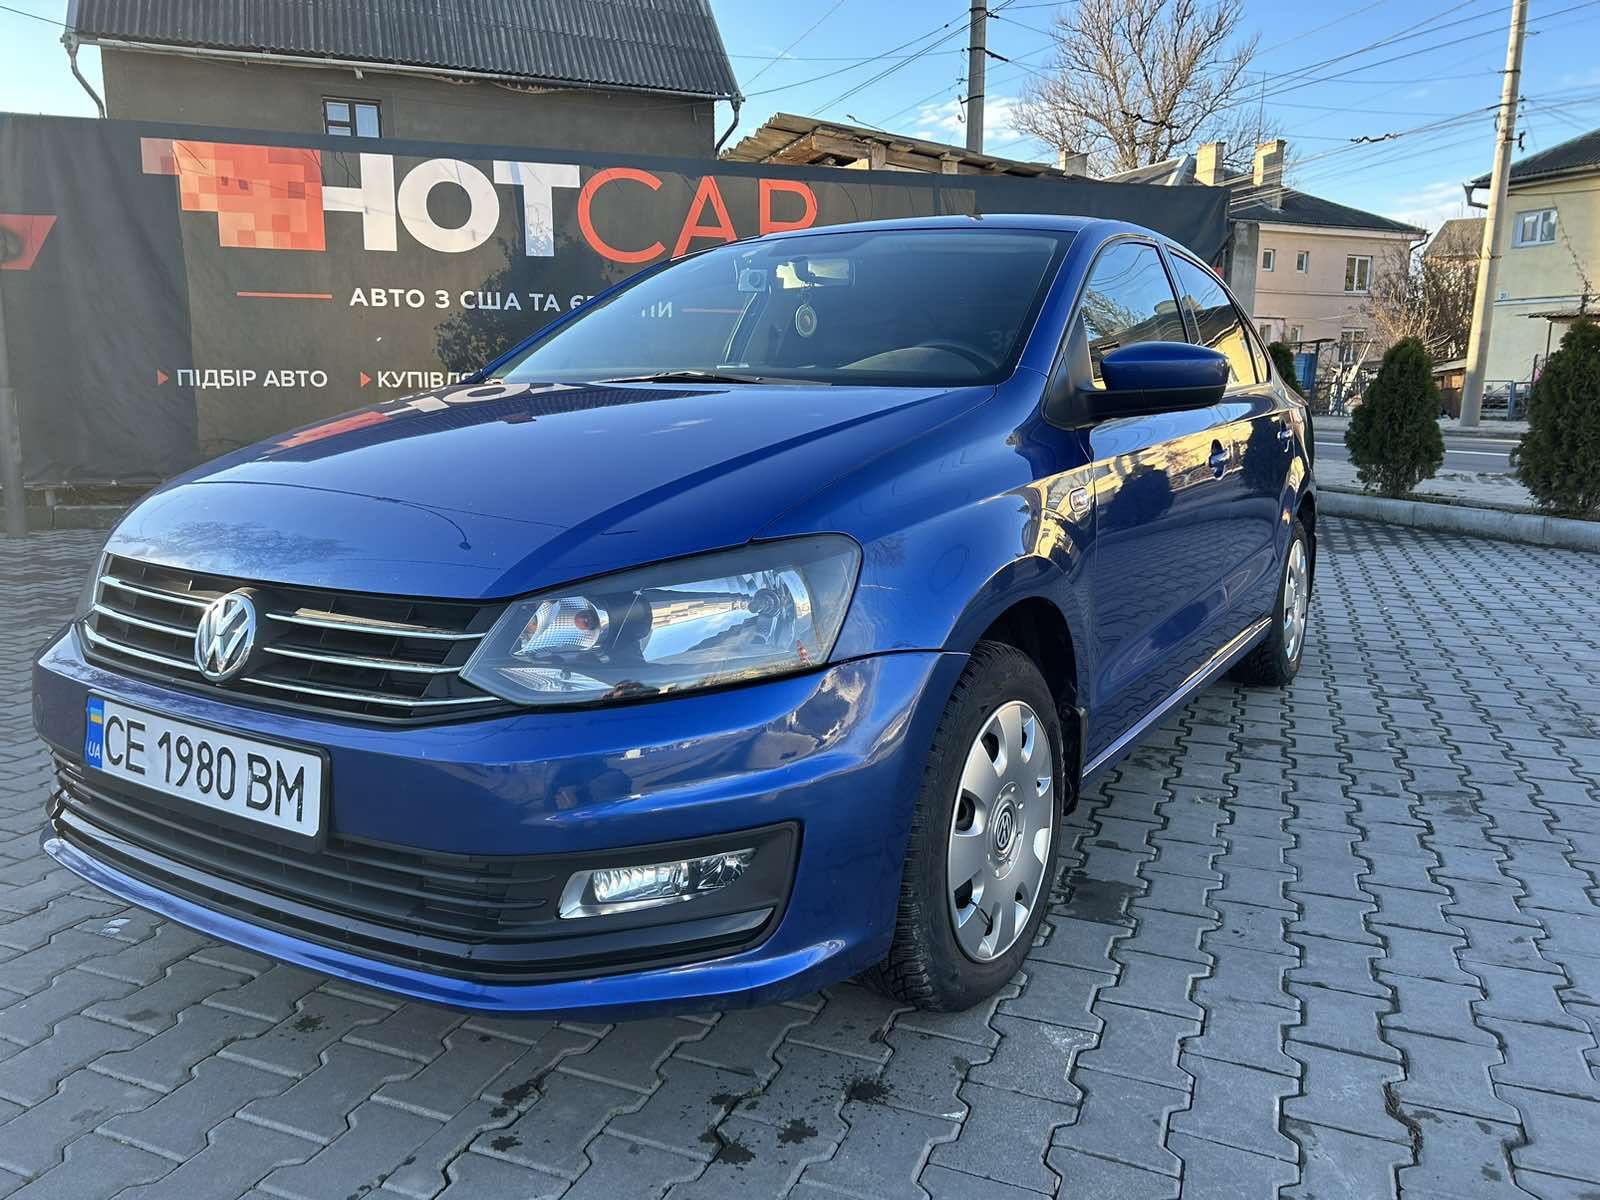 Volkswagen Polo 2018
Газ / Бензин, 1.4 л
Синій колір
Відсутній у розшу